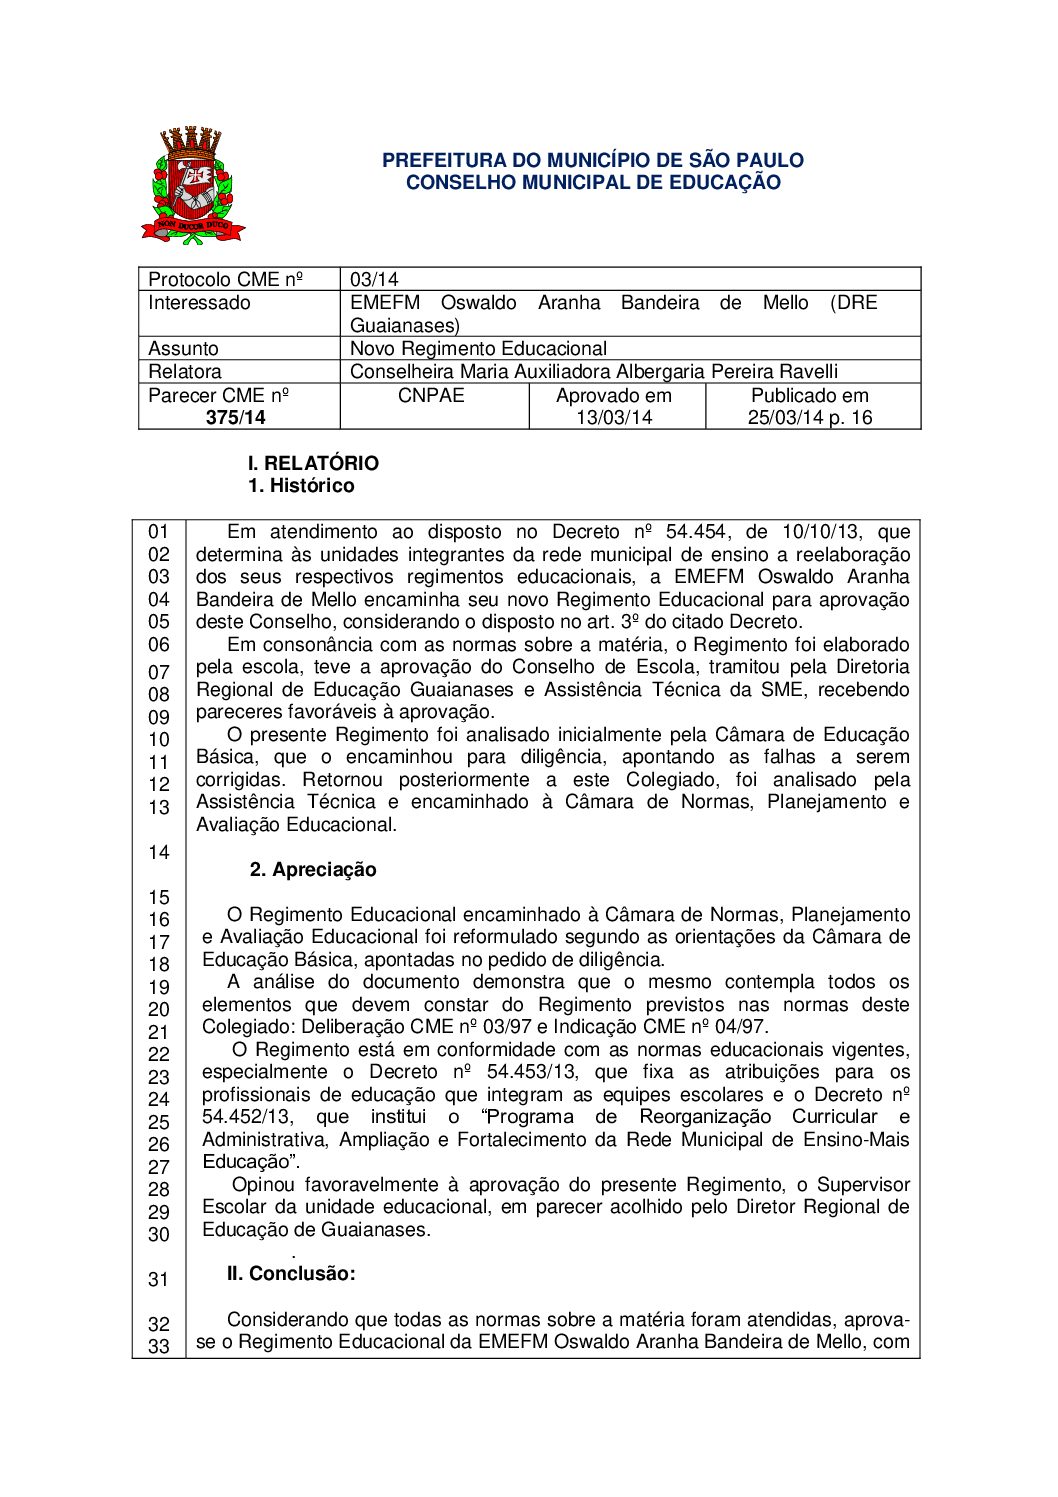 Parecer CME nº 375/2014 - EMEFM Oswaldo Aranha Bandeira de Mello (DRE Guaianases) - Novo Regimento Educacional